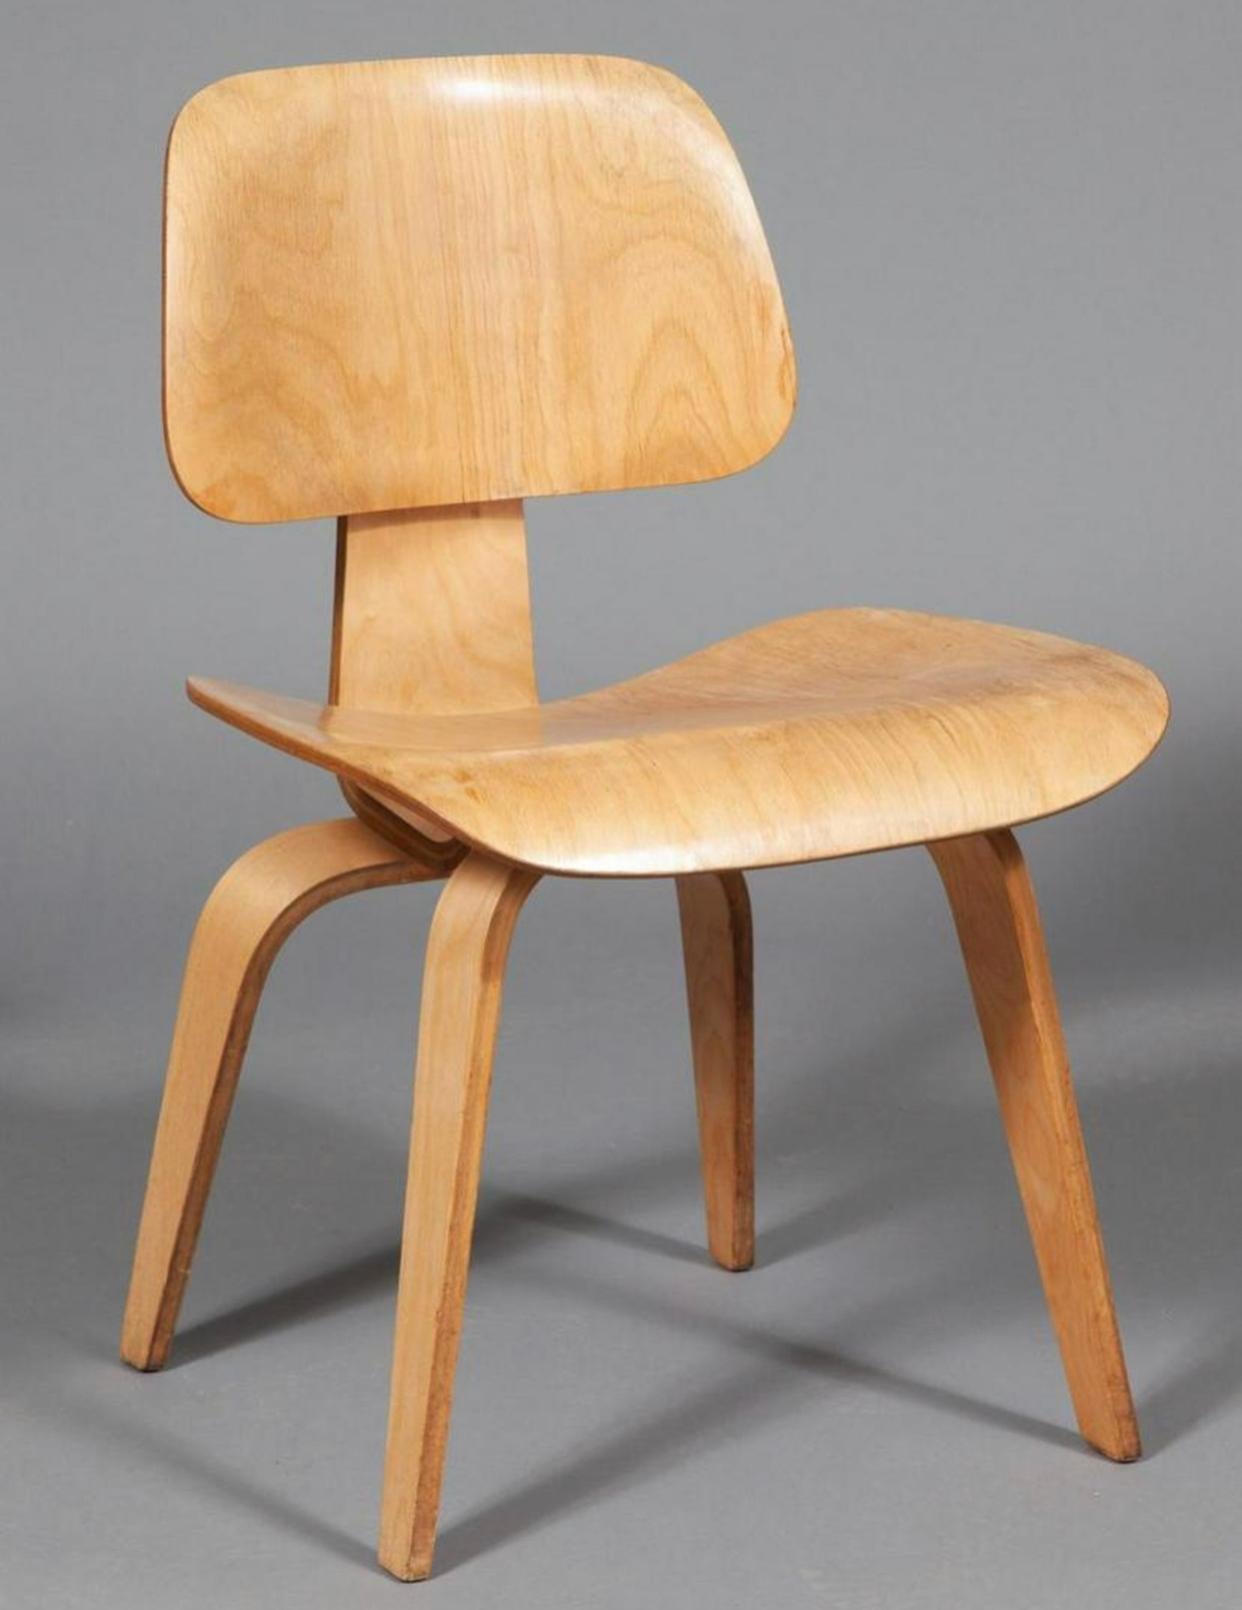 Seltener Satz von vier DCW-Esszimmerstühlen, entworfen von Charles und Ray Eames und hergestellt von Evans Products. Diese wurden in den 1940er Jahren hergestellt, bevor Herman Miller die Produktion übernahm. Komponenten aus formgepresstem,